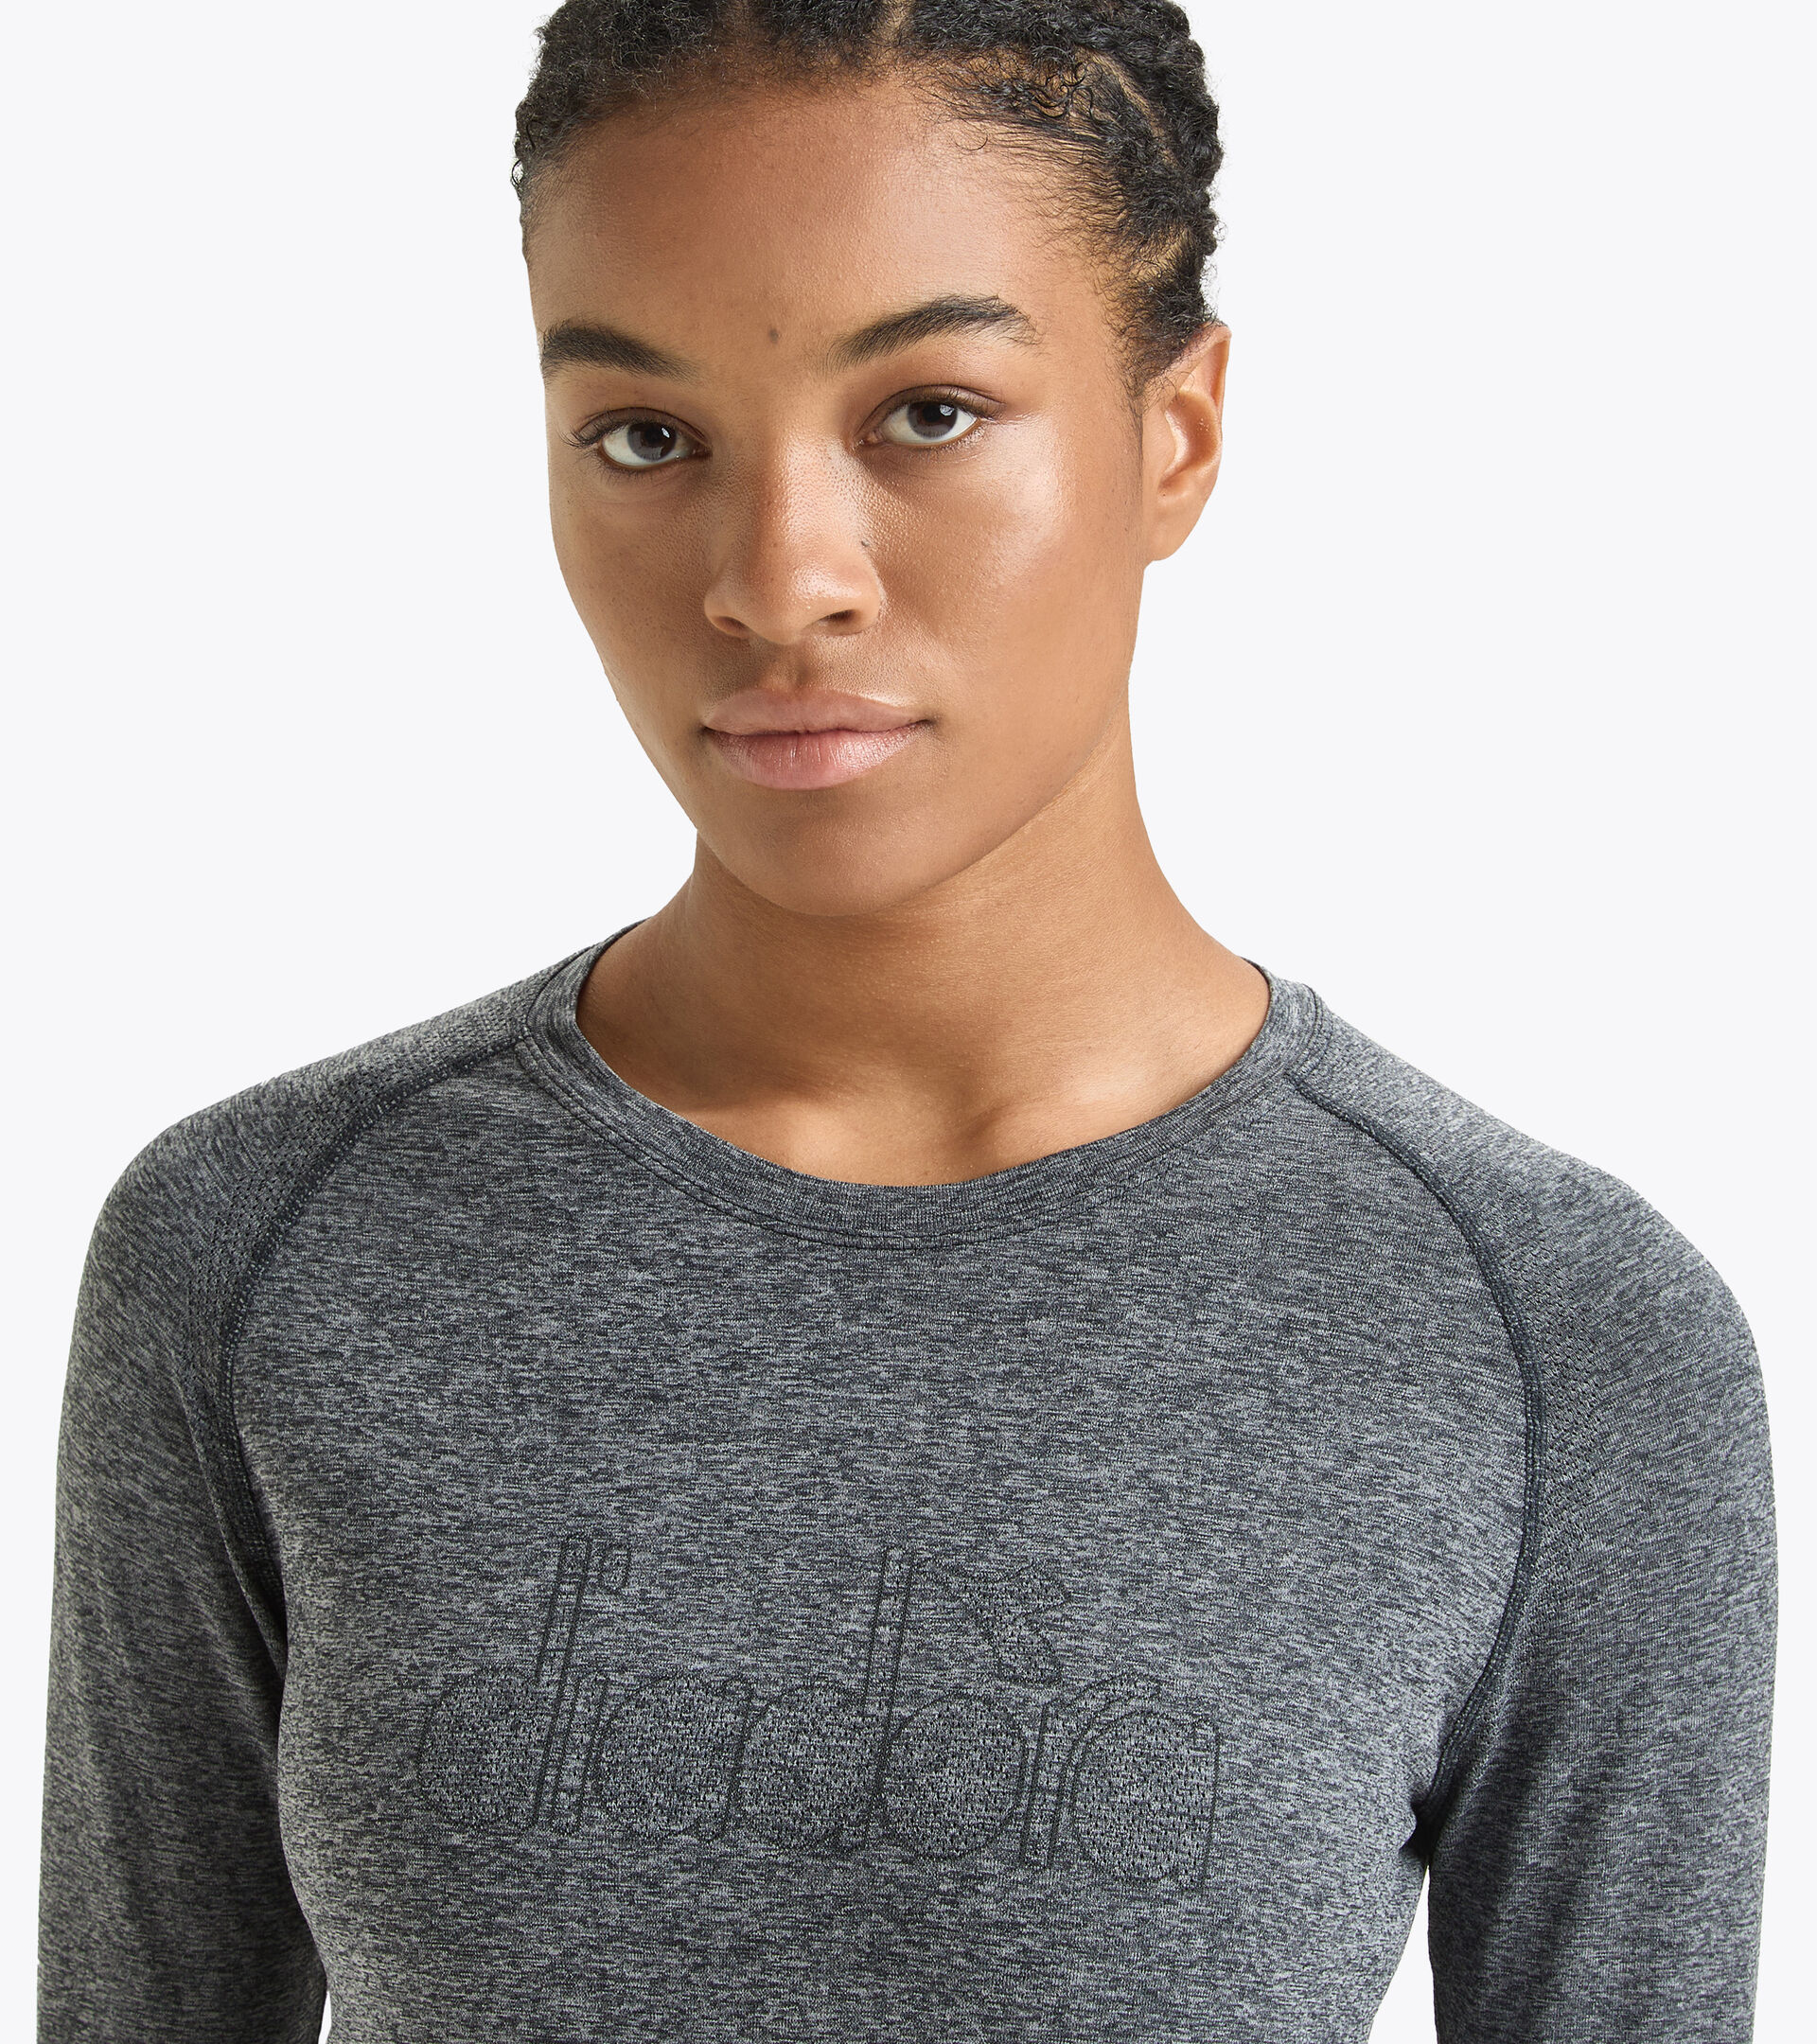 L. LS T-SHIRT SKIN FRIENDLY Long-sleeved thermal shirt - Women - Diadora  Online Store DK